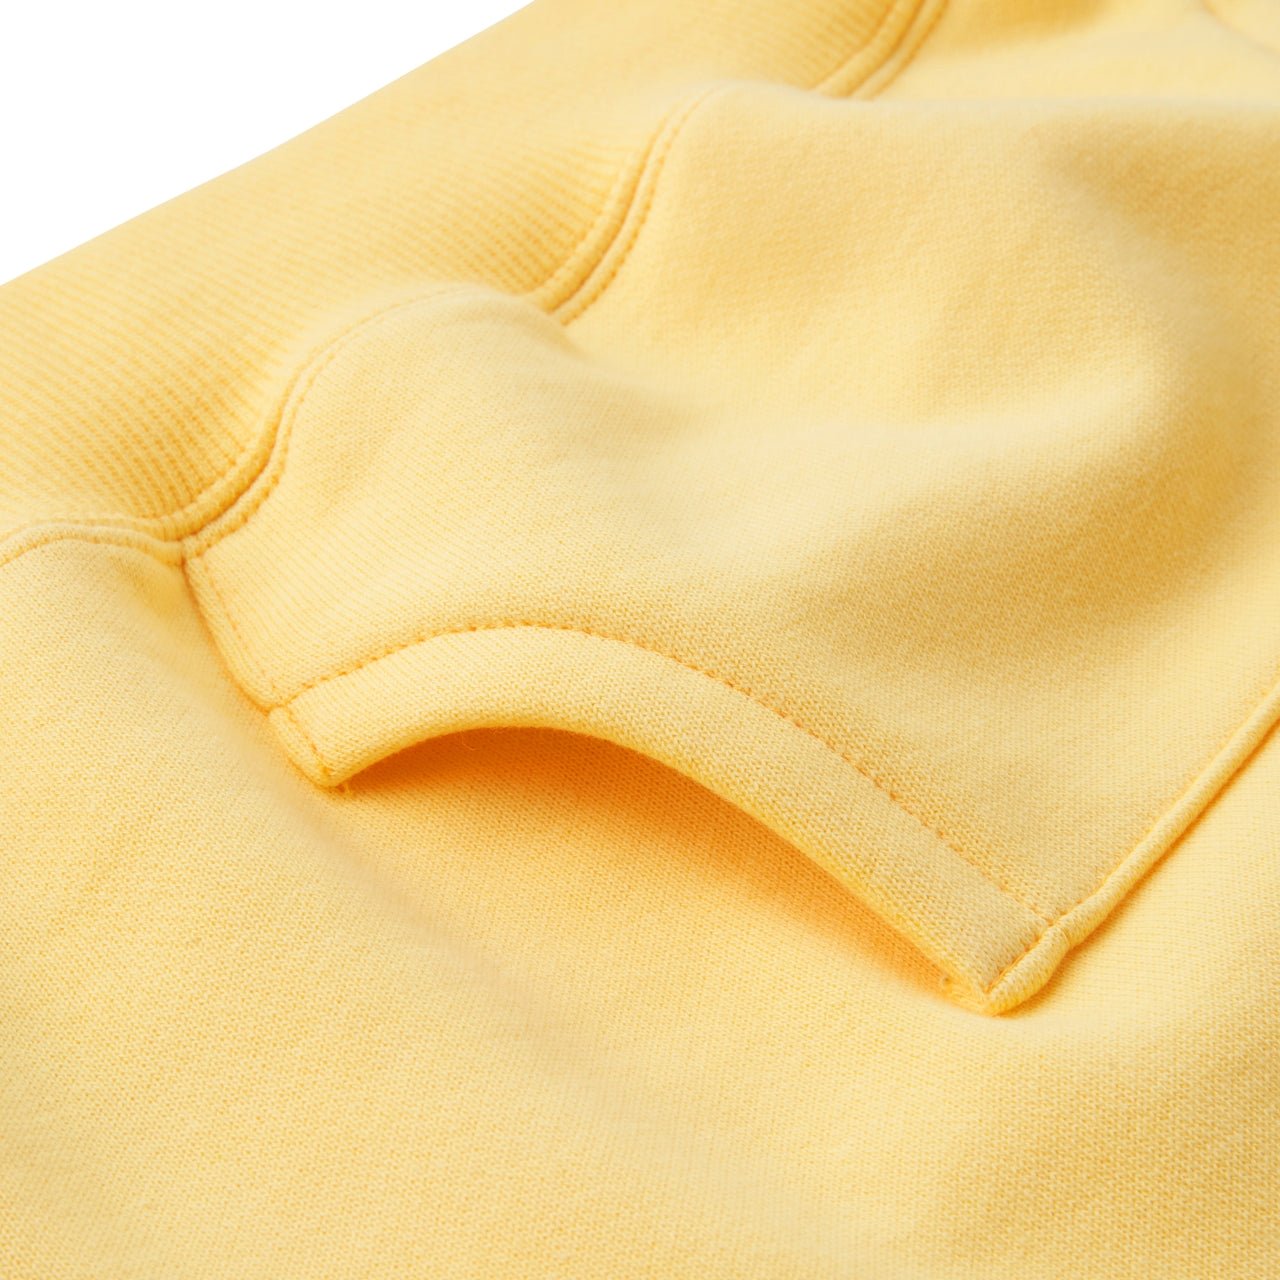 Kangaroo Pocket Sweatshirt - Usako - 13-5606-571-04-80